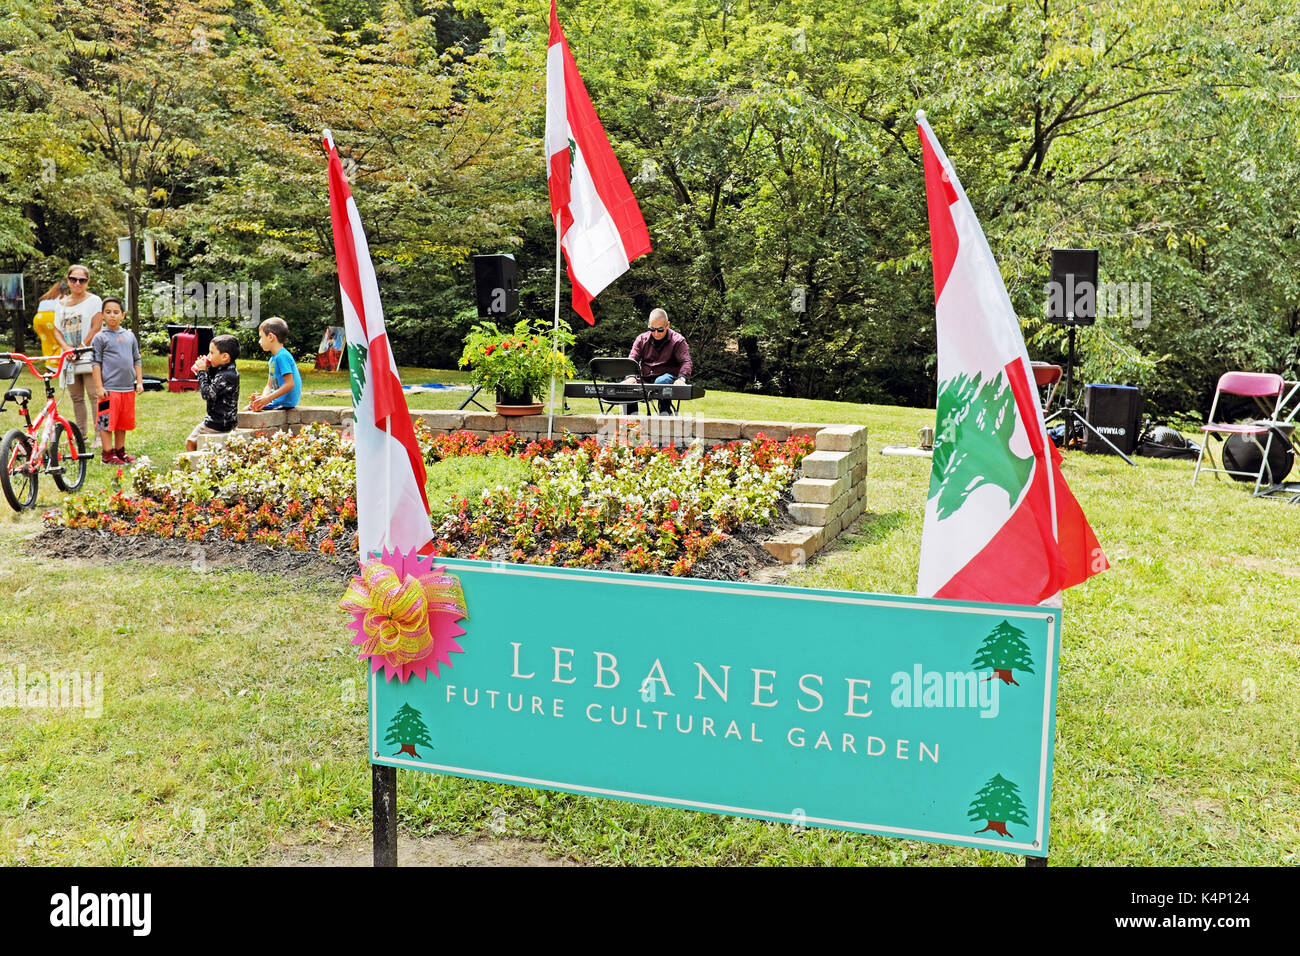 Menschen die Teilnahme an der Cleveland Ohio eine Welt Tag in die Zukunft kultureller Garten, der das Land darstellt, des Libanon. Stockfoto